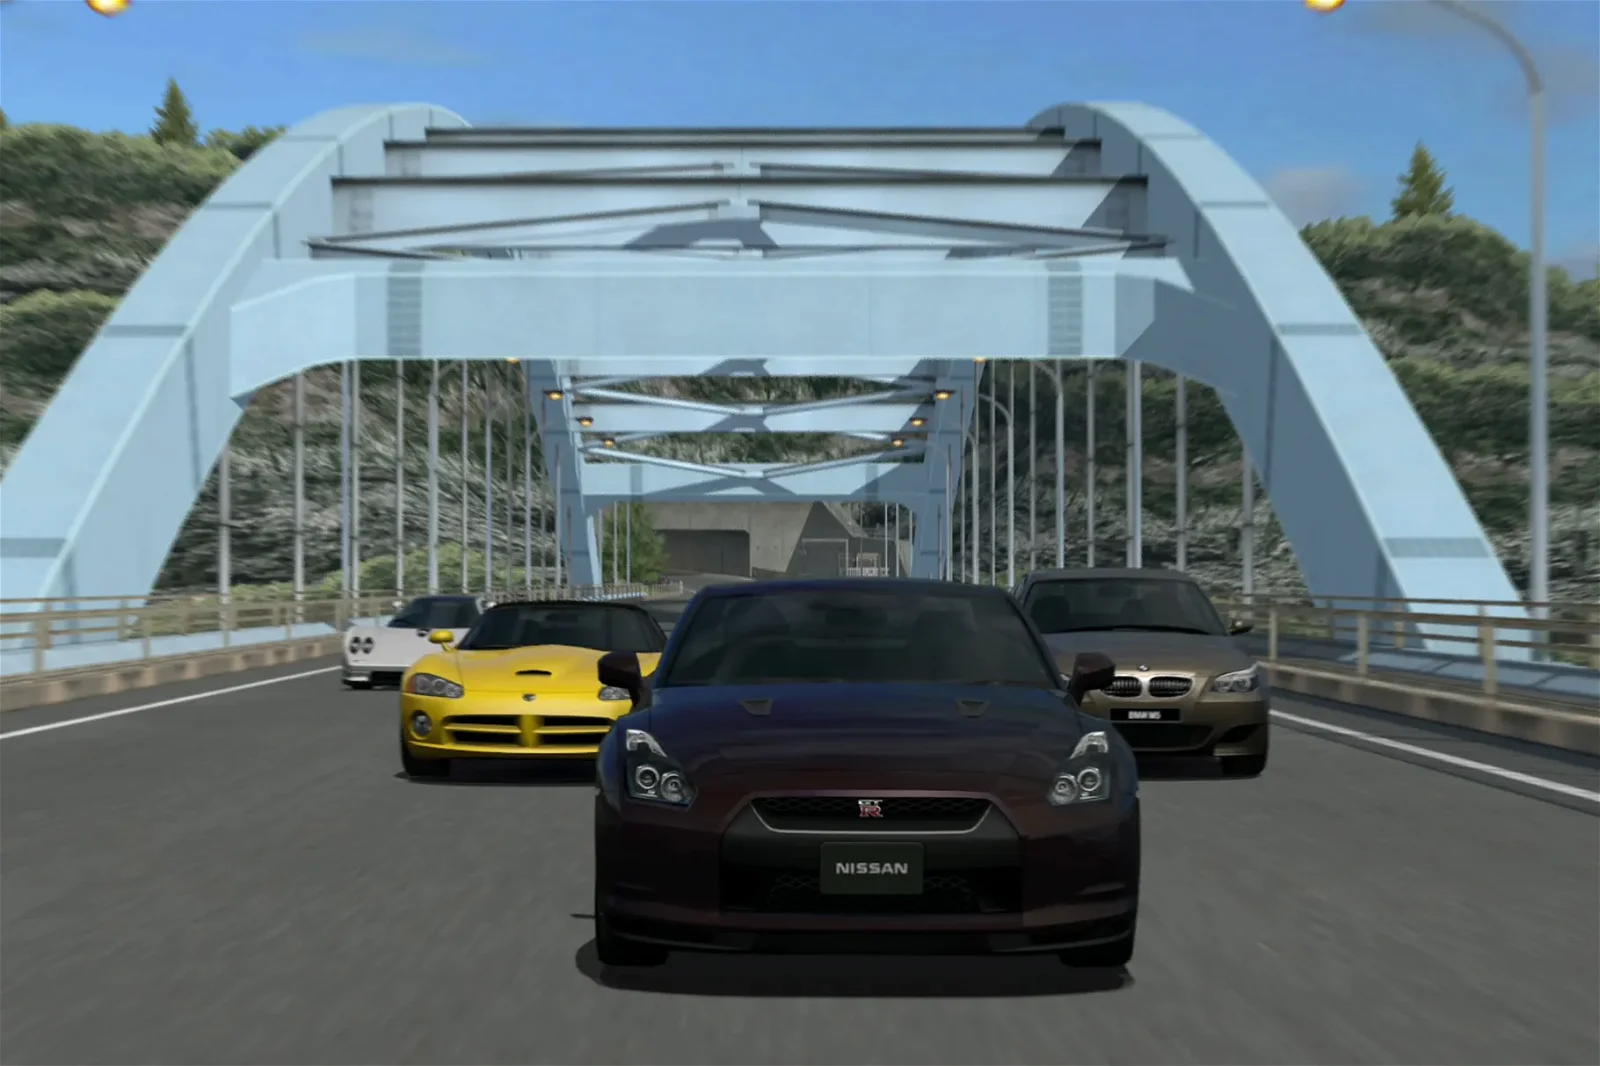 Immagine di Gran Turismo PSP, scoperti nuovi cheat code dopo 14 anni